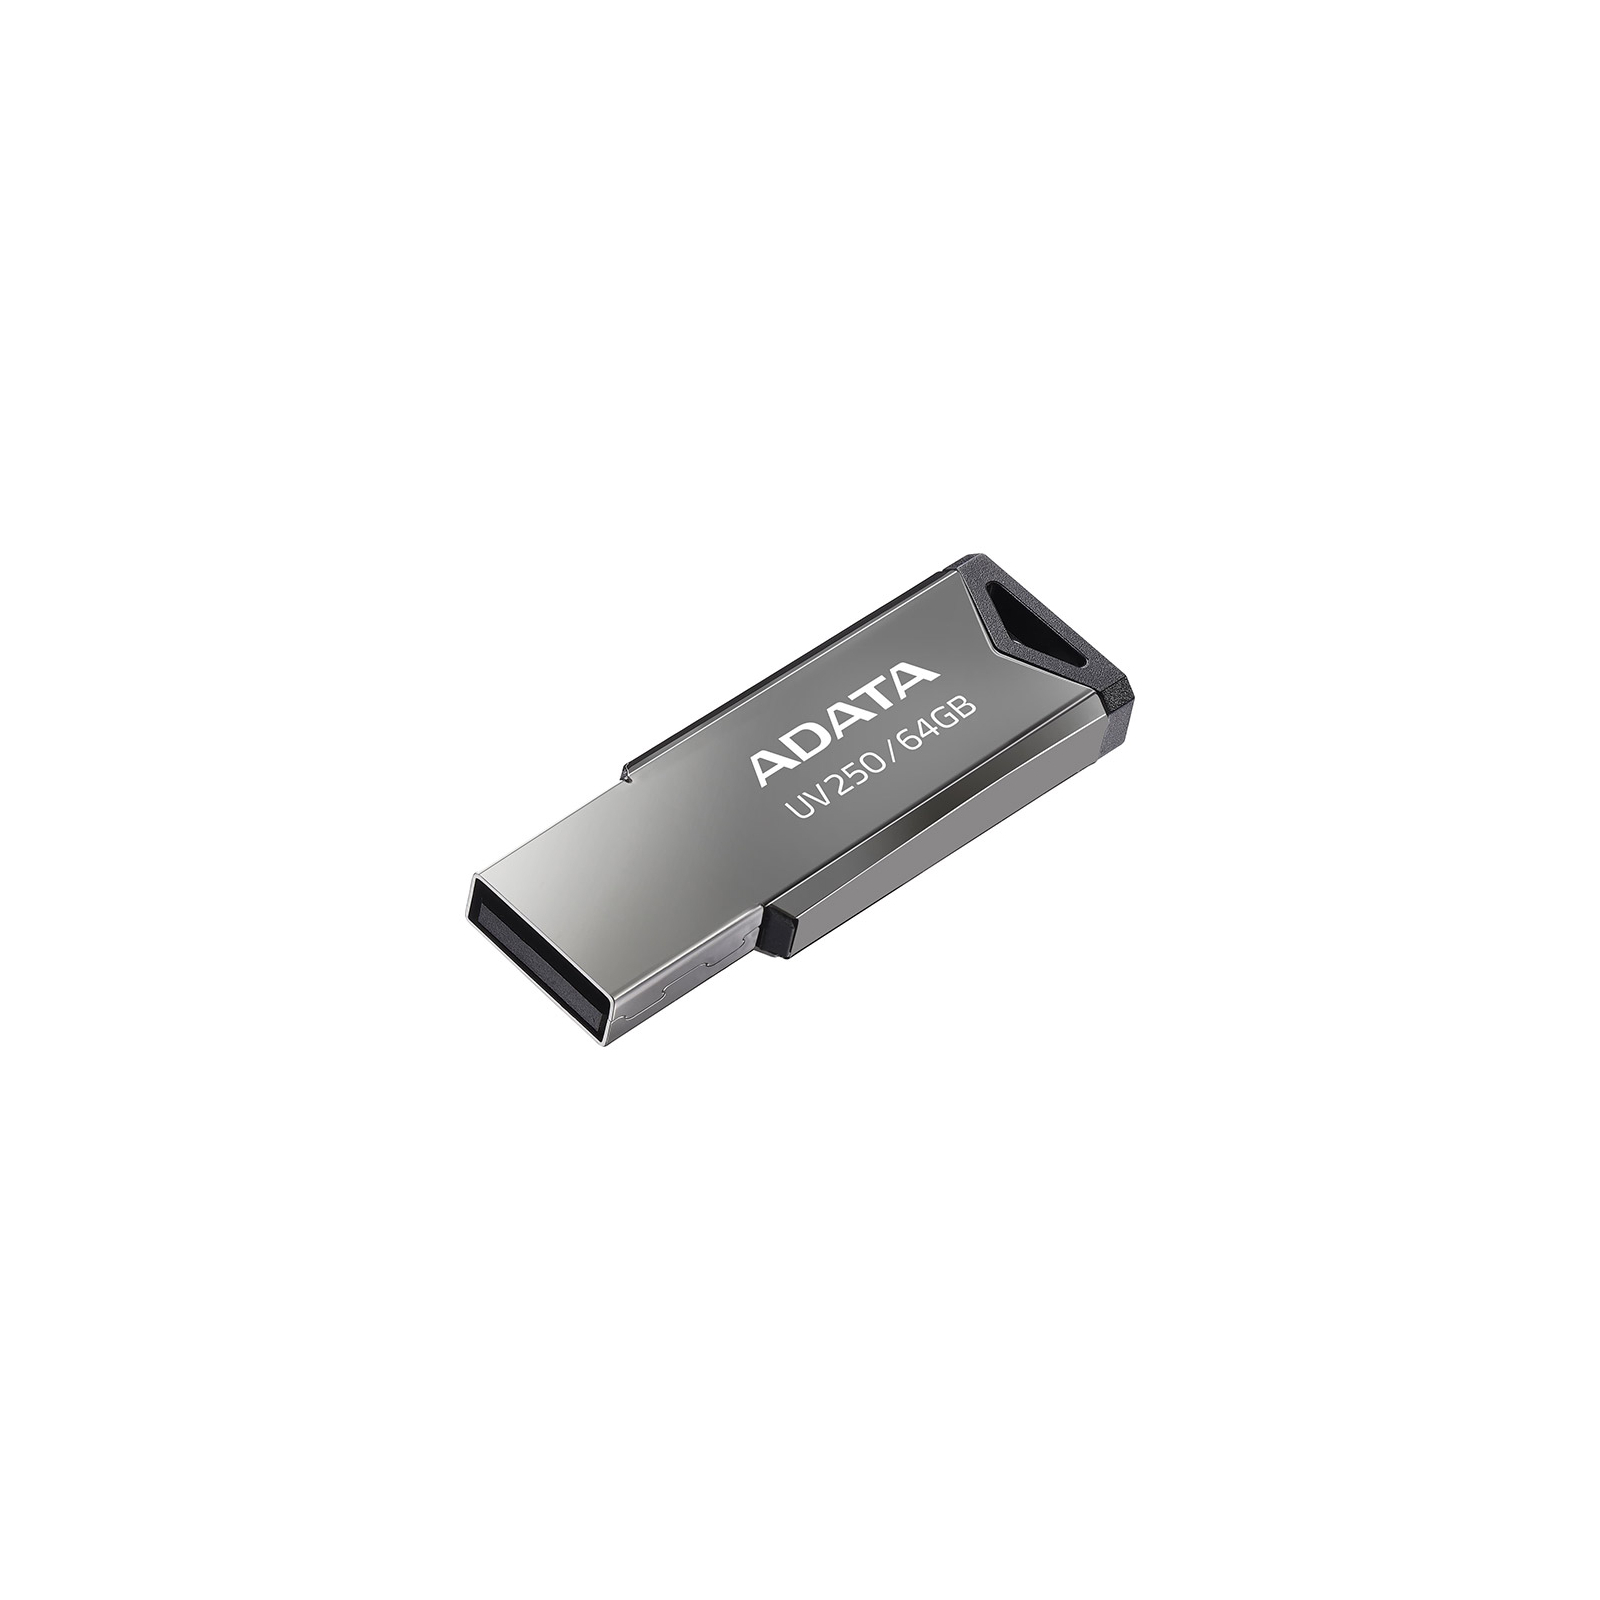 USB флеш накопичувач ADATA 64GB AUV 250 Black USB 2.0 (AUV250-64G-RBK)